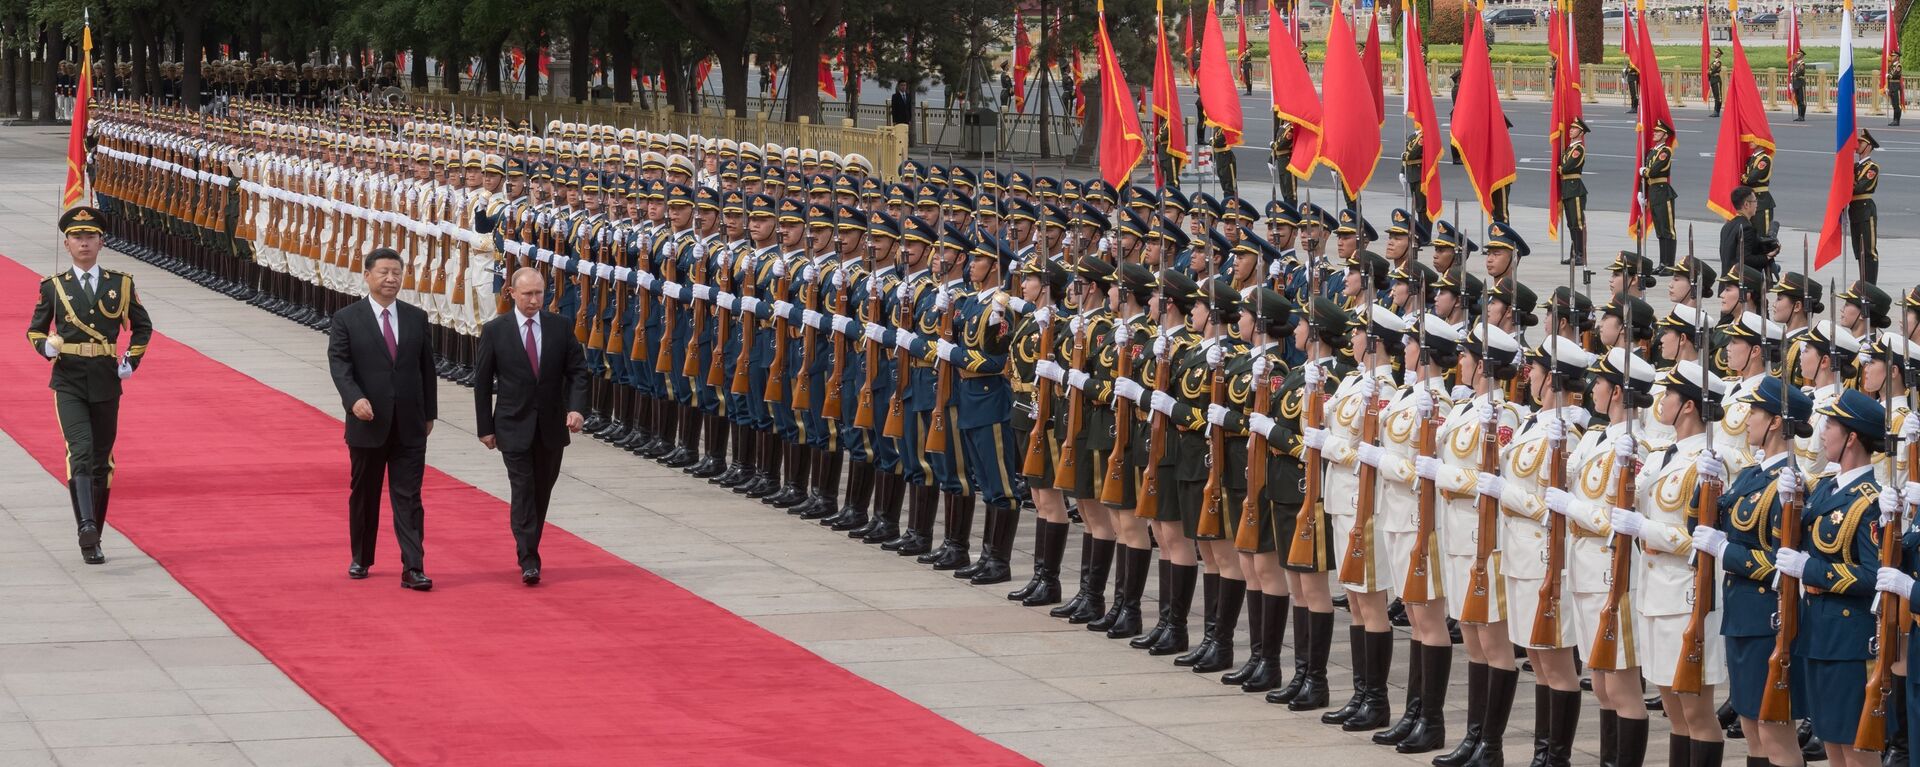 Tổng thống Nga Vladimir Putin đã đến thủ đô Bắc Kinh của Trung Quốc trong chuyến thăm chính thức - Sputnik Việt Nam, 1920, 25.11.2021